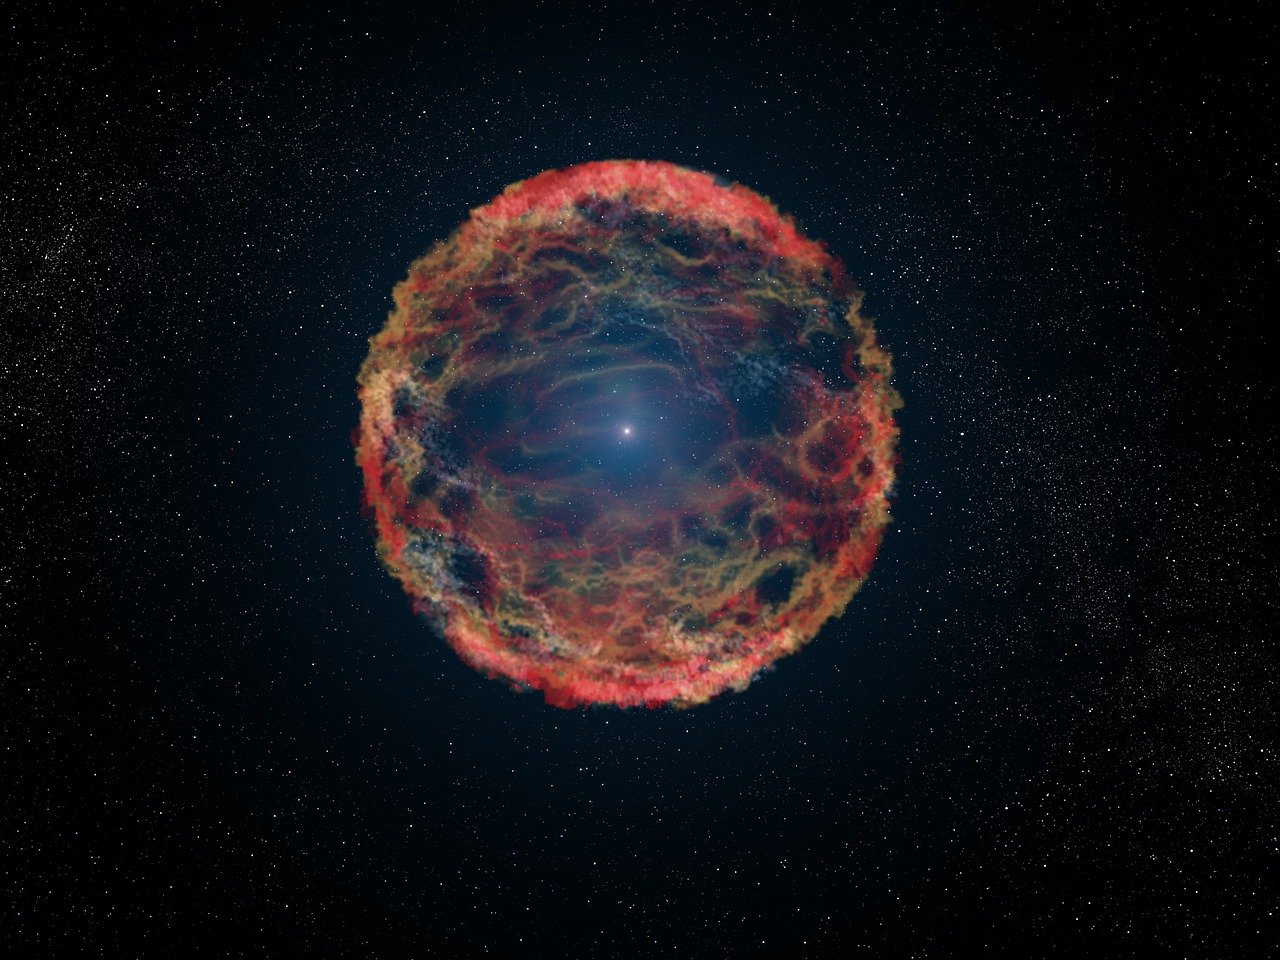  Des étoiles explosant dans le cosmos ont peut-être causé une extinction massive sur Terre